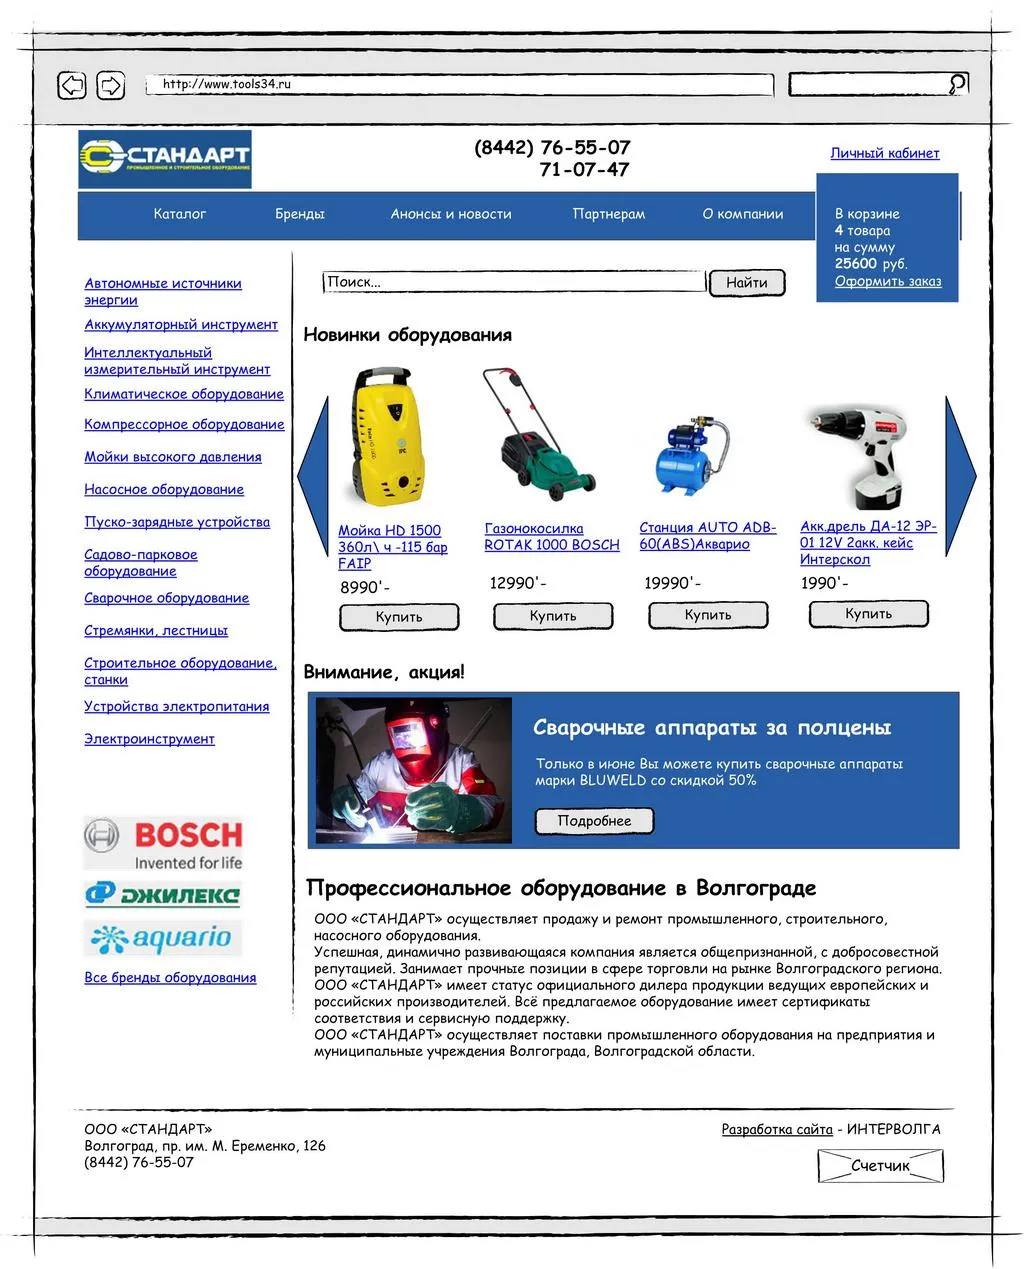 Прототип главной страницы интернет-магазина компании Стандарт